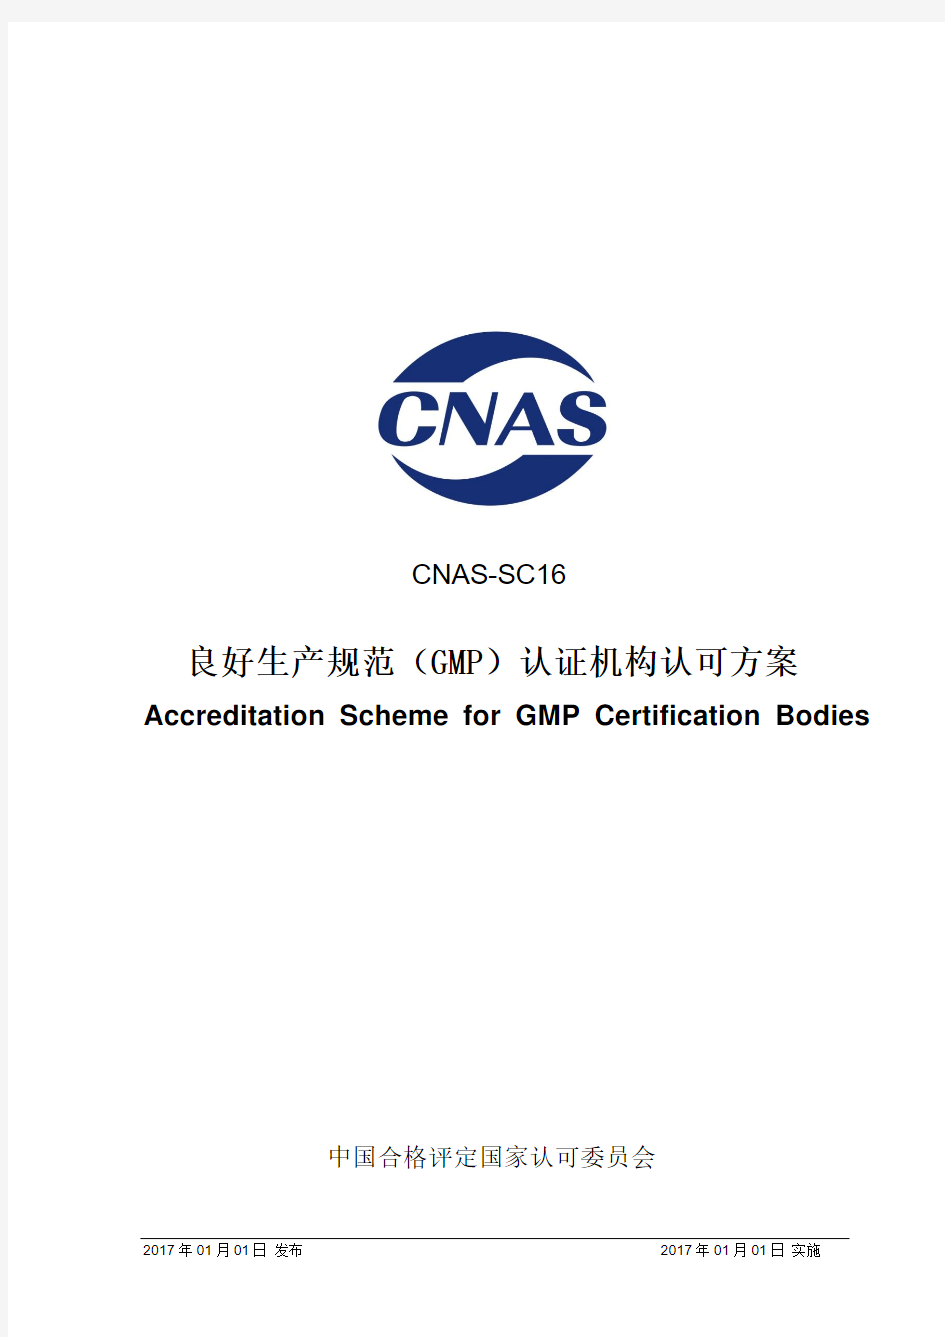 CNAS-SC16-2017 良好生产规范(GMP)认证机构认可方案